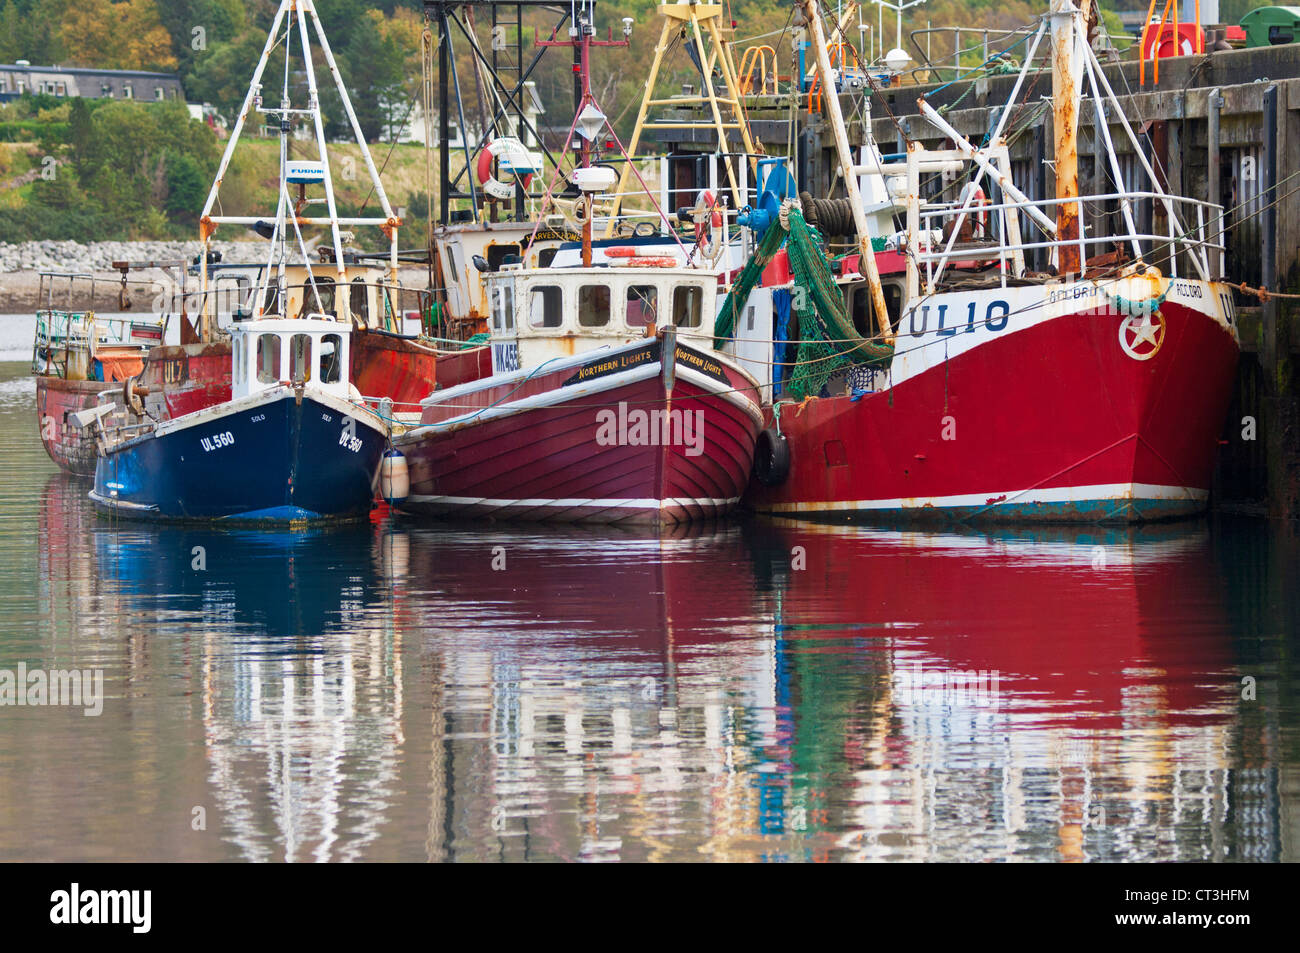 Le navi per la pesca a strascico e le piccole barche da pesca ormeggiate in Ullapool Harbour Wester Ross Scozia UK GB EU Europe Foto Stock